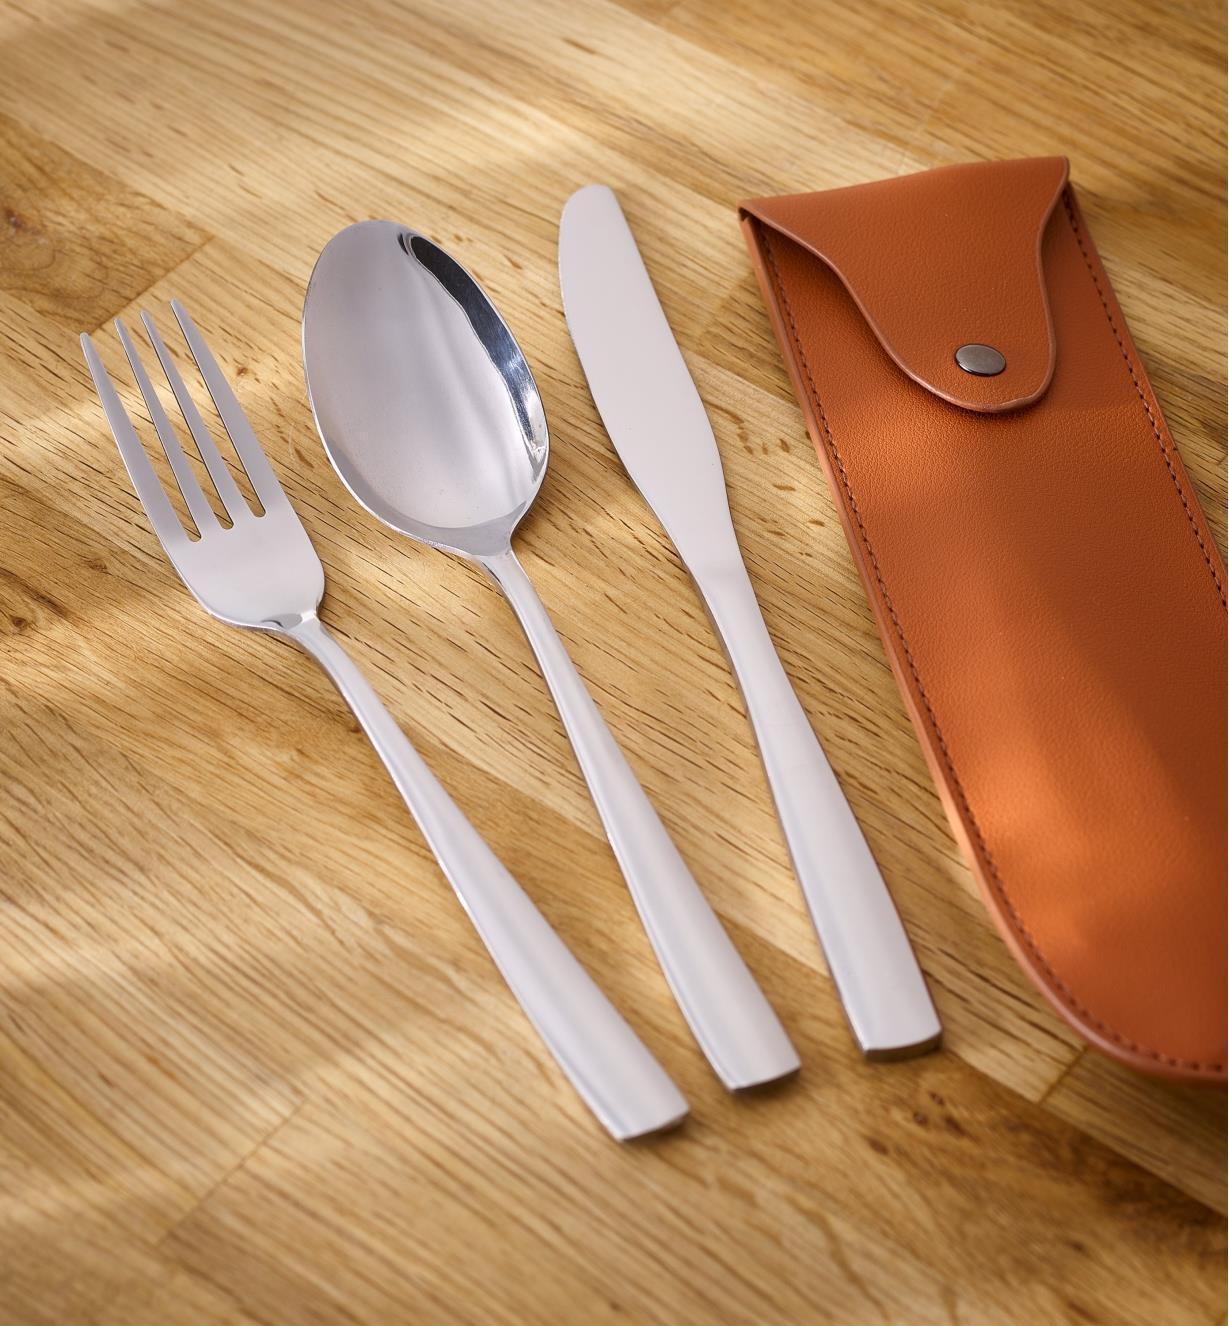 La cuillère, le couteau, la fourchette et l’étui d’un ensemble d'ustensiles portatif présentés sur un comptoir